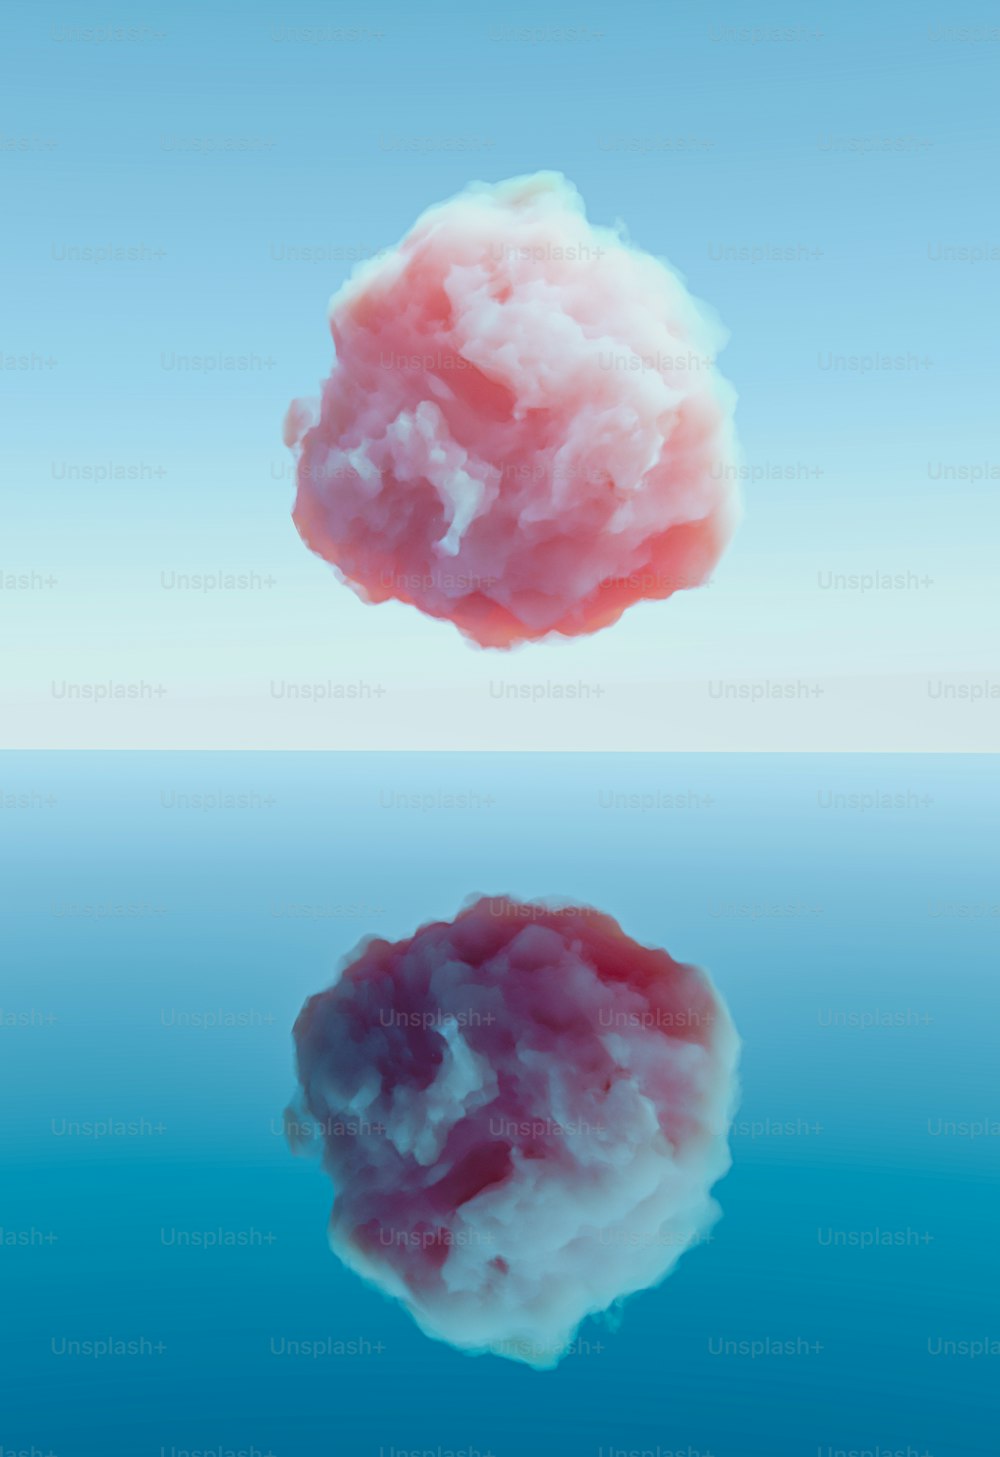 un nuage rose flottant dans l’air au-dessus d’un plan d’eau